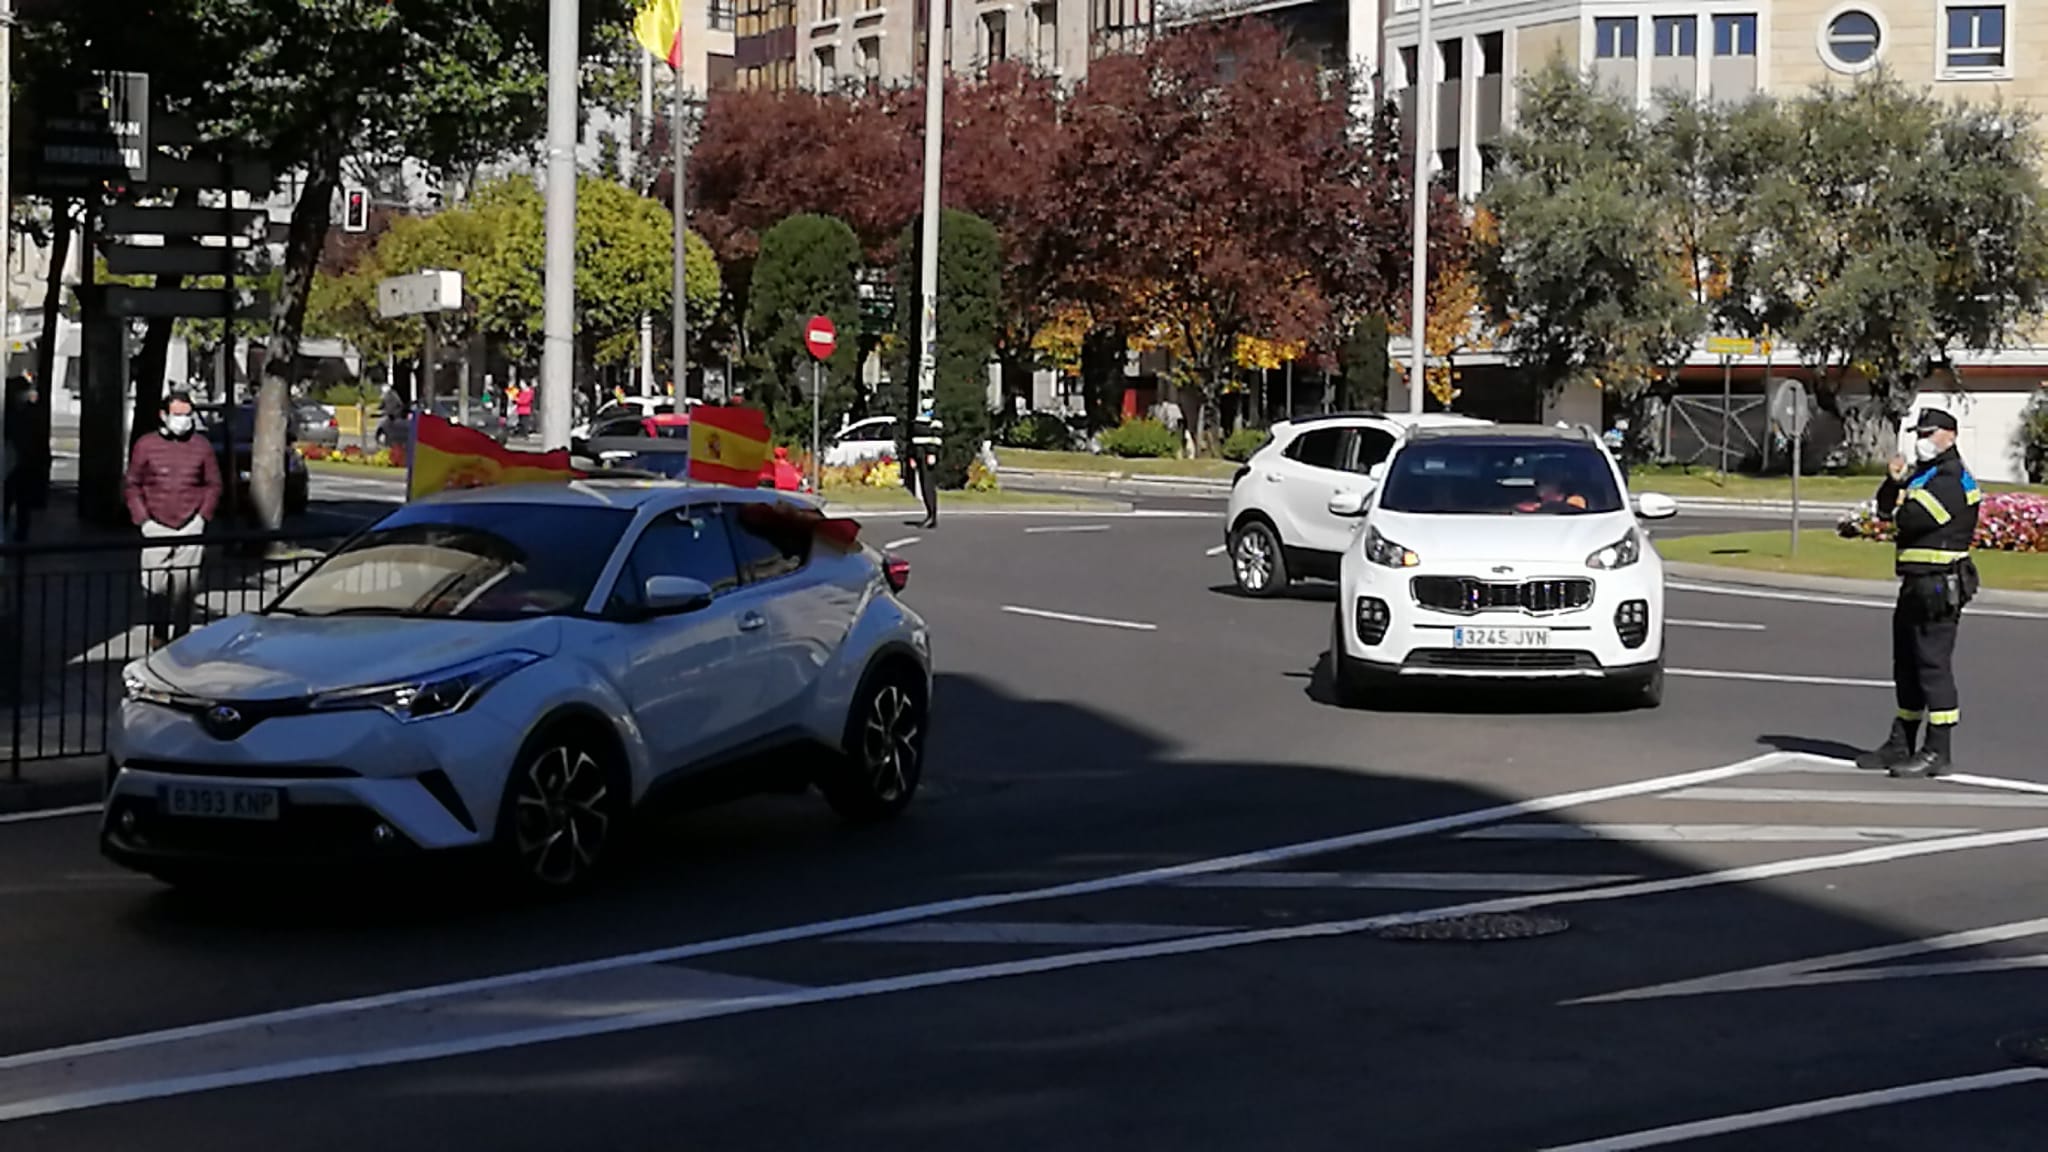 La caravana de coches hizo el circuito de avenida Mirat, plaza España y Gran Vía.